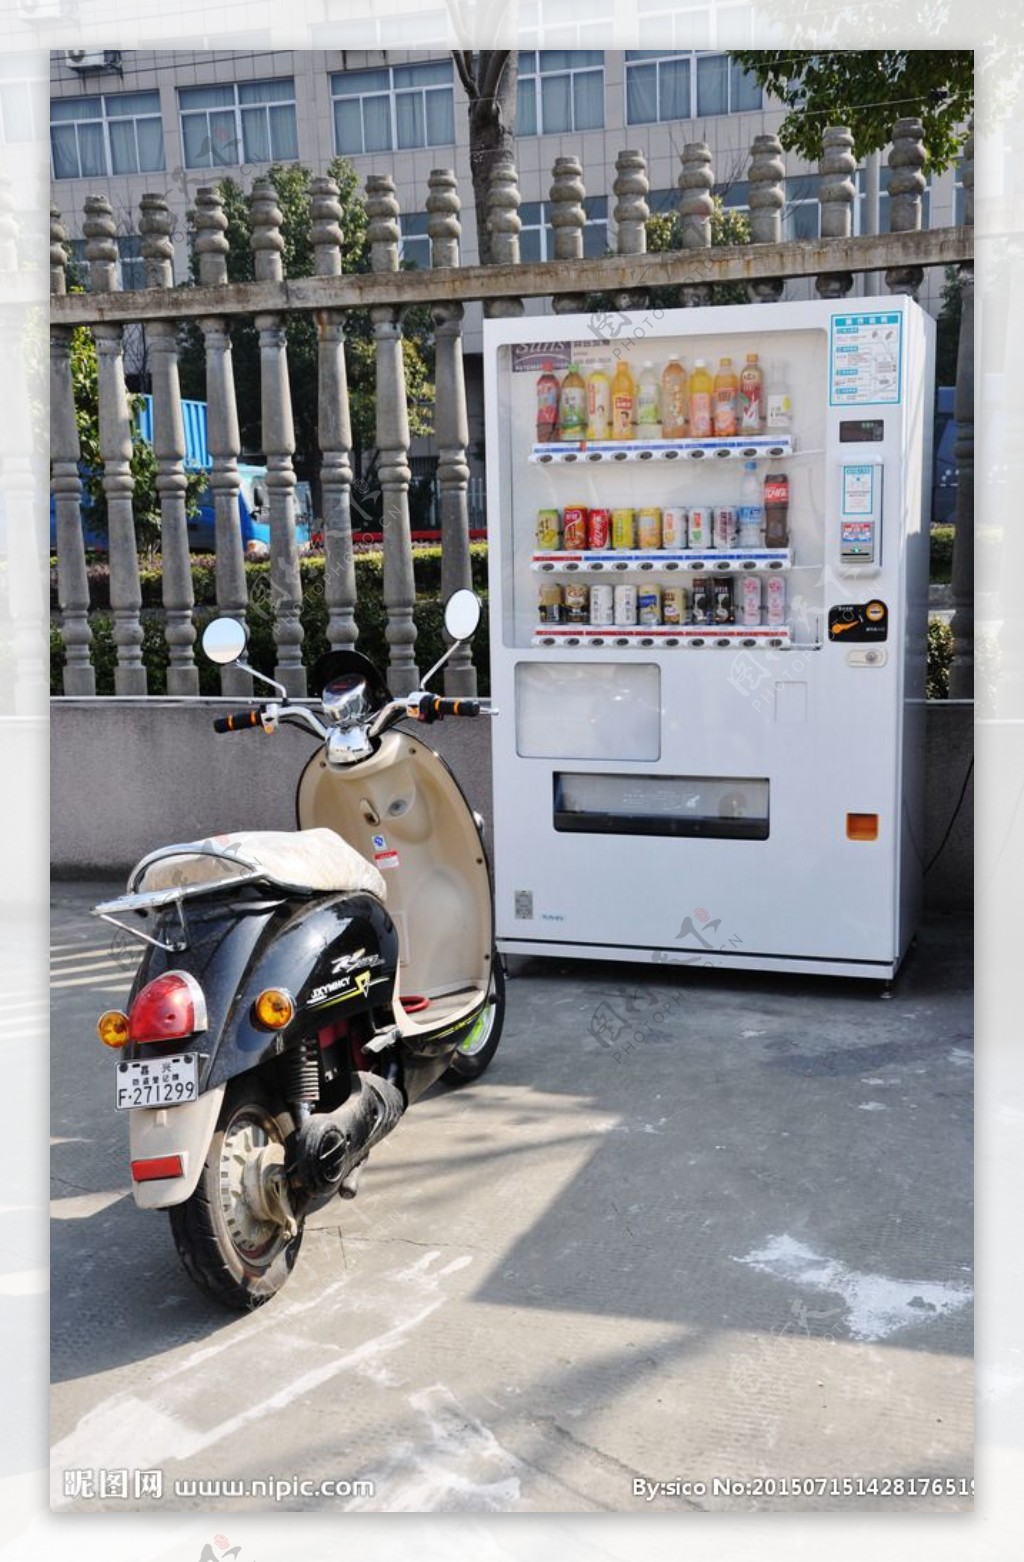 自动贩卖机和摩托车高清照片图片